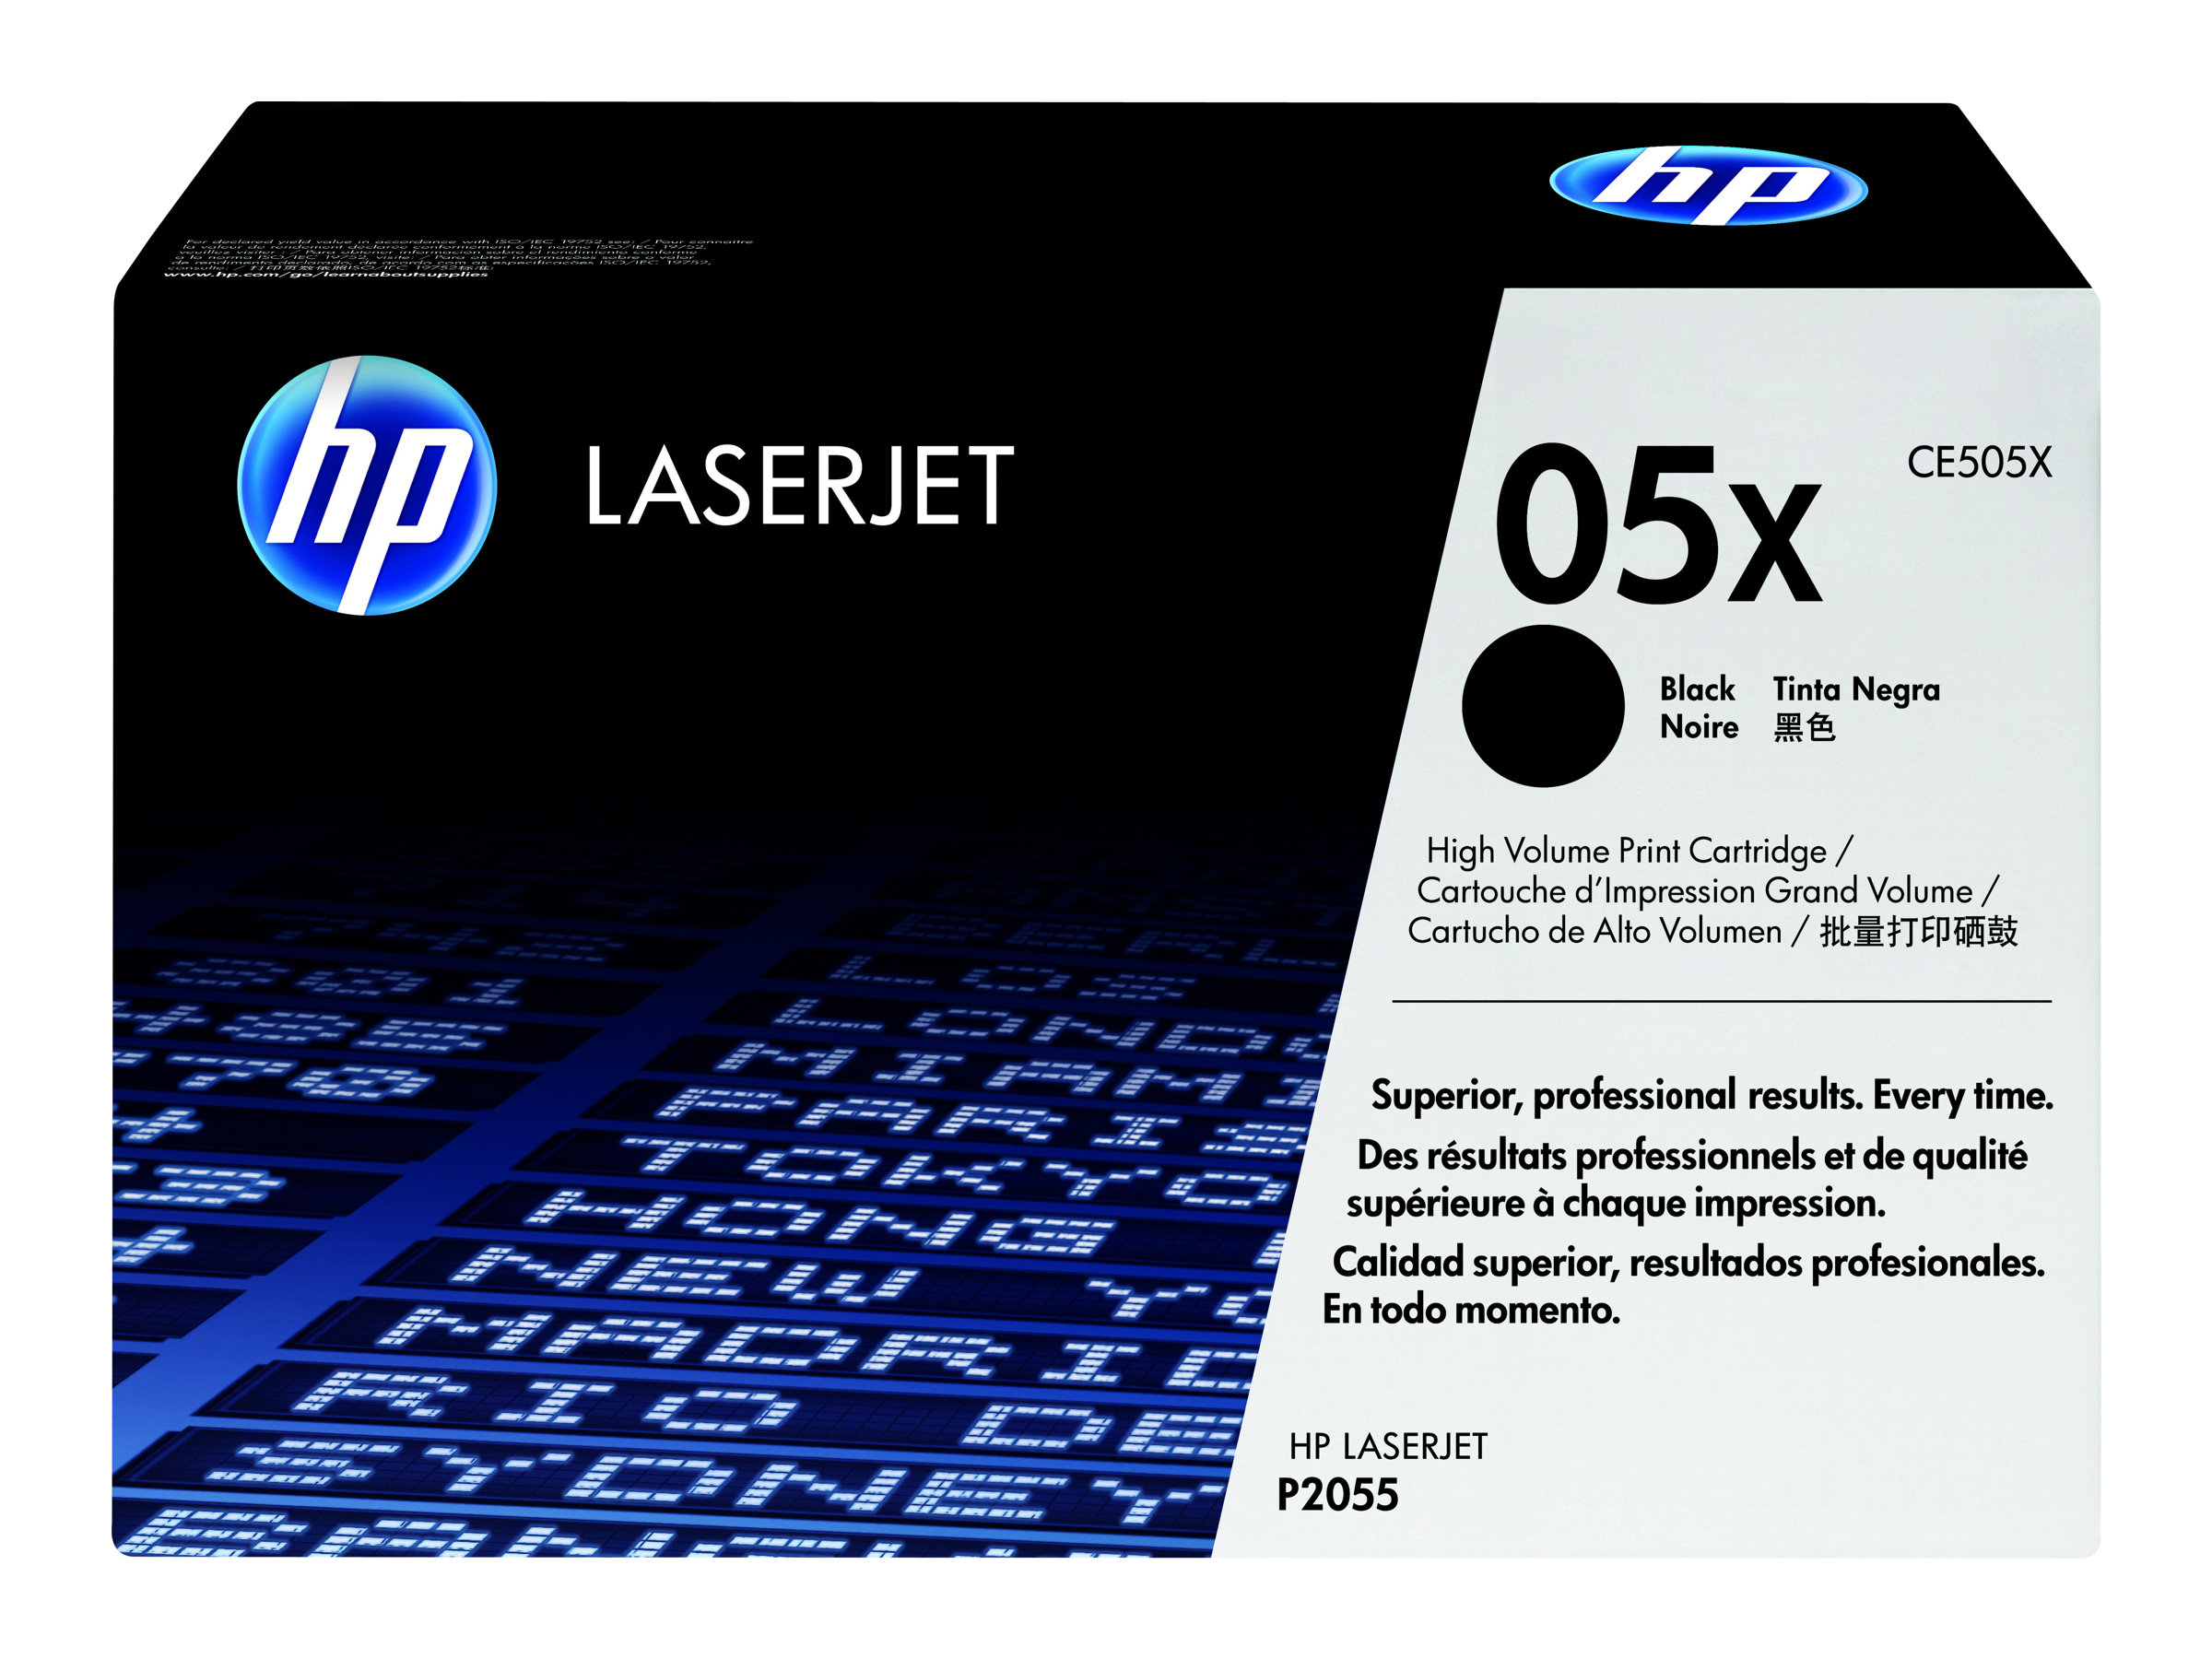 Toner CE505X / schwarz / bis zu 6500 Seiten / für HP LaserJet P2055